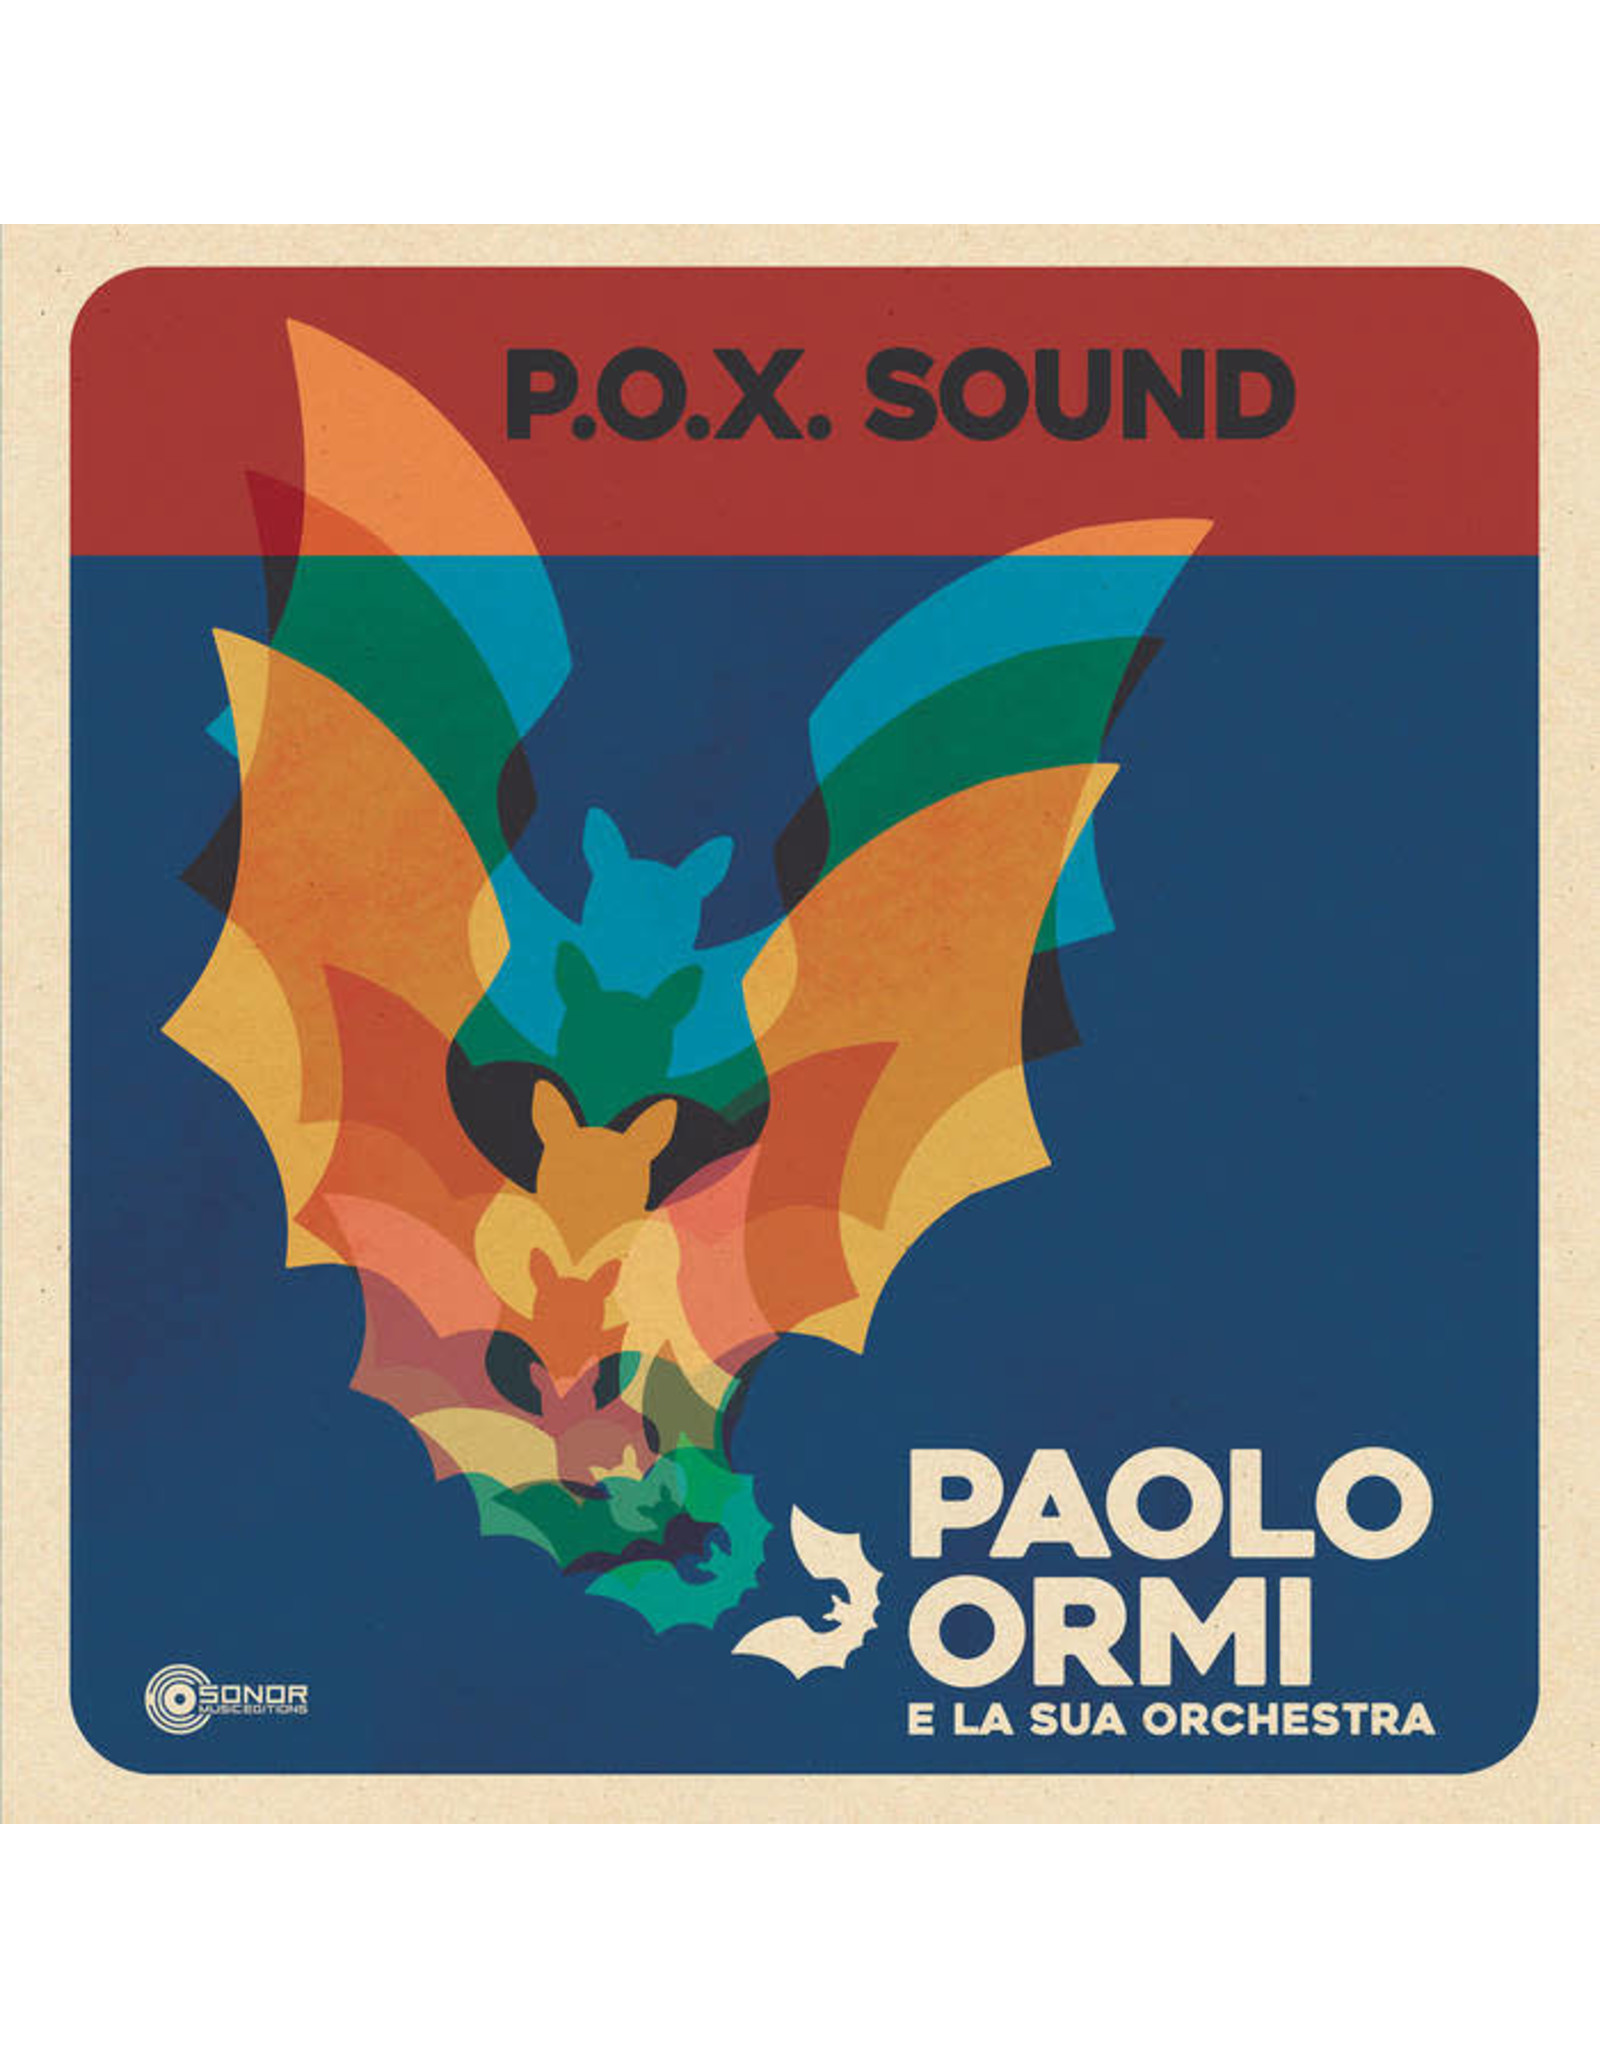 Sonor Music Editions Ormi, Paolo e La Sua Orchestra: P.O.X. Sound LP